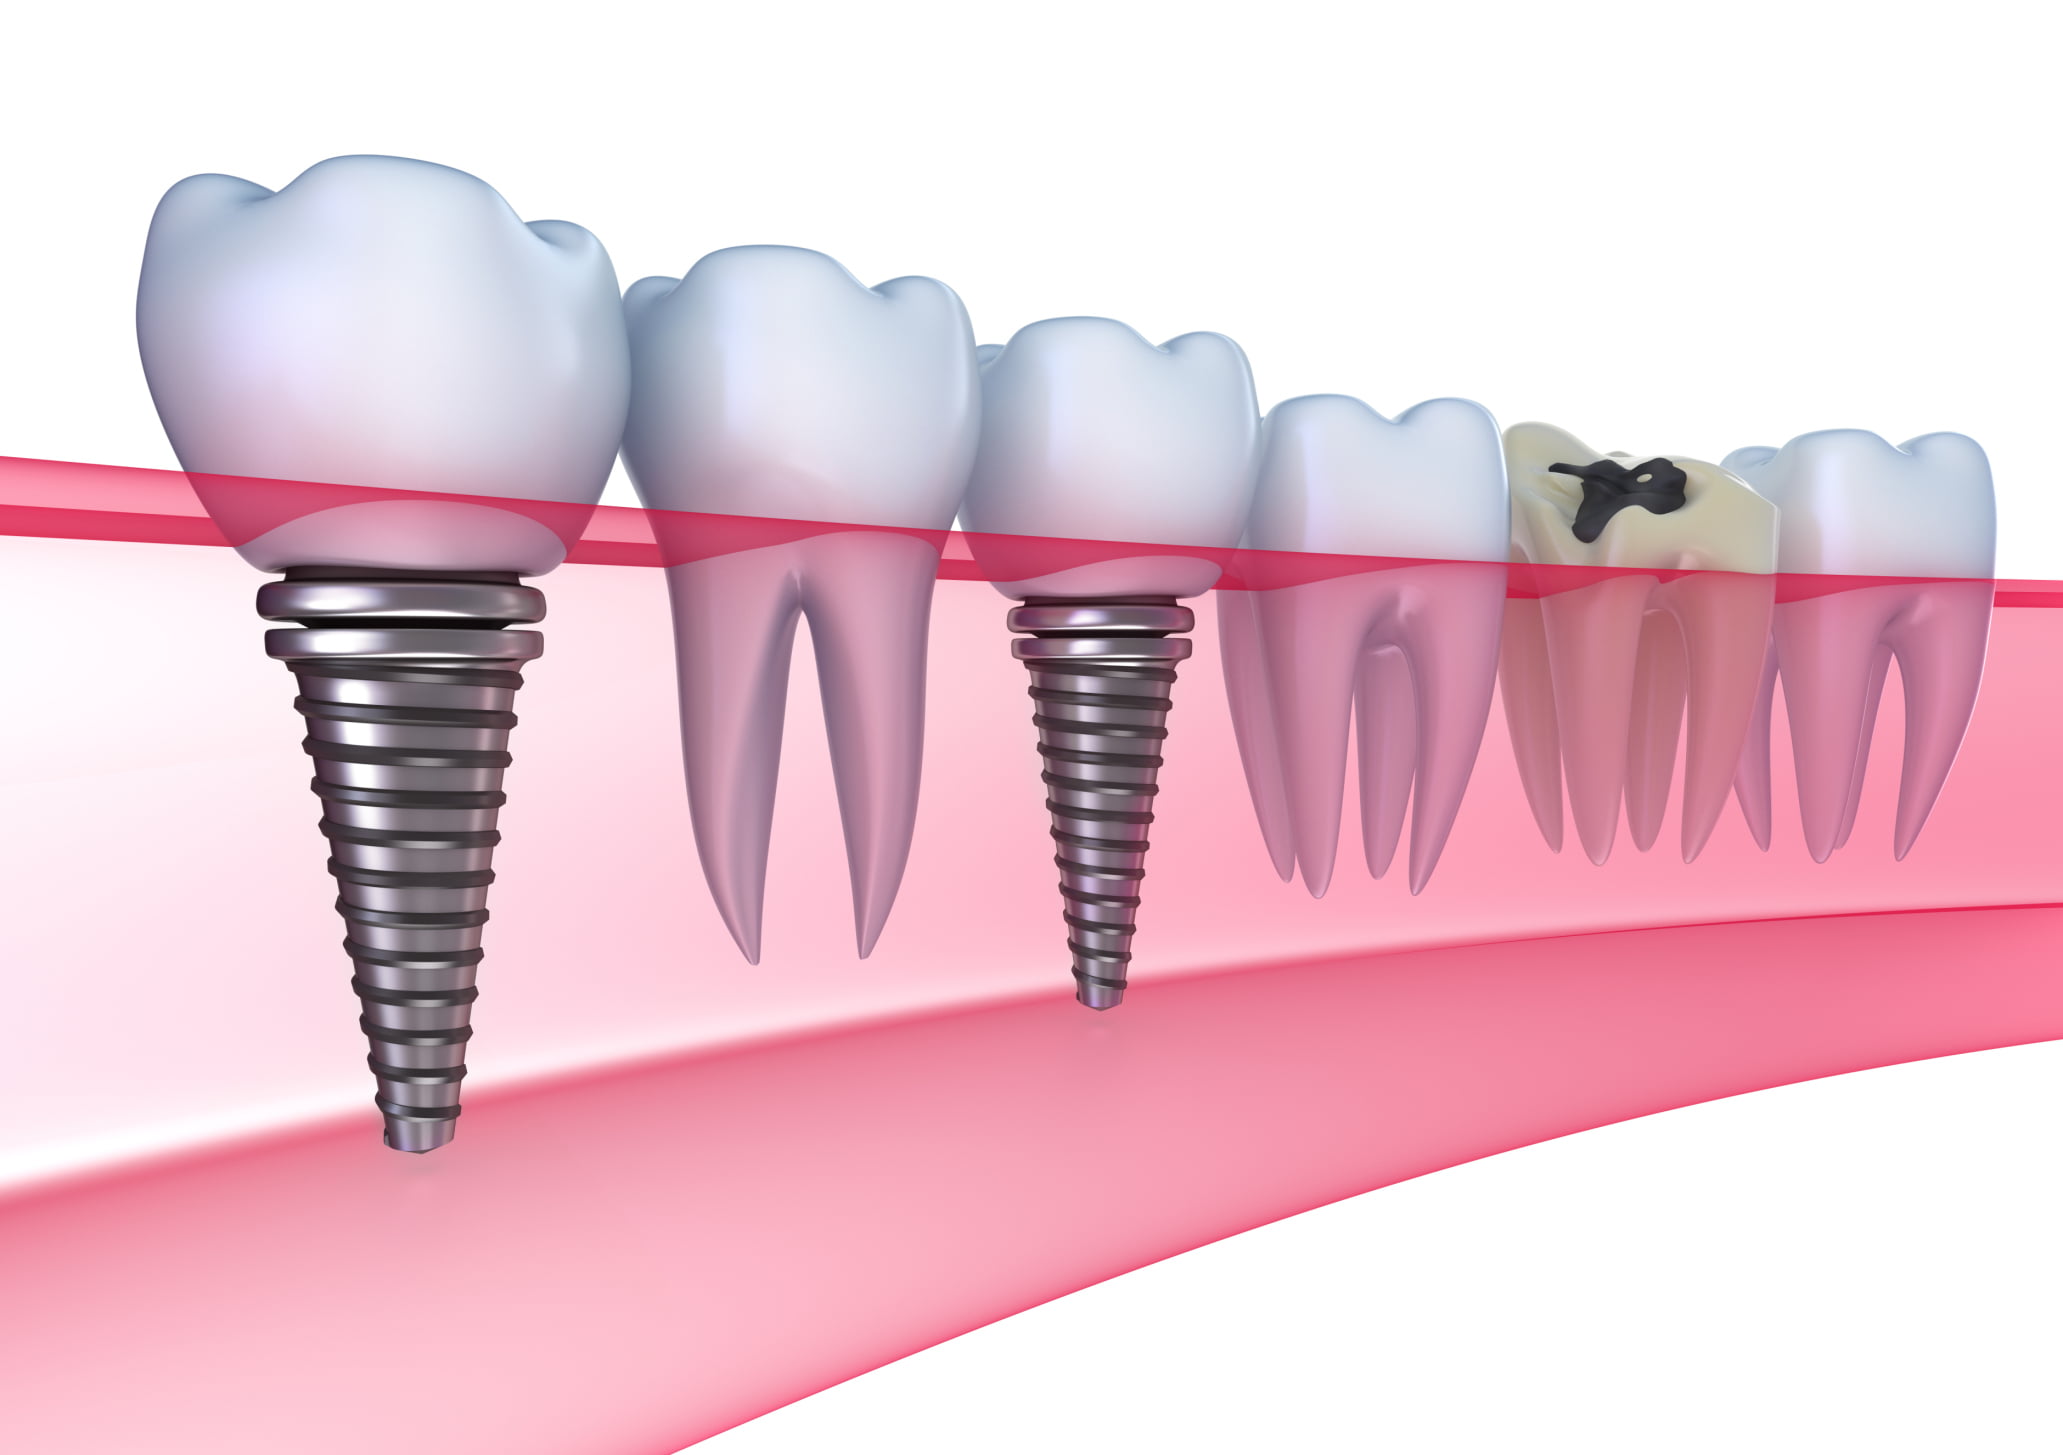 Cấy ghép implant khi mất toàn bộ răng